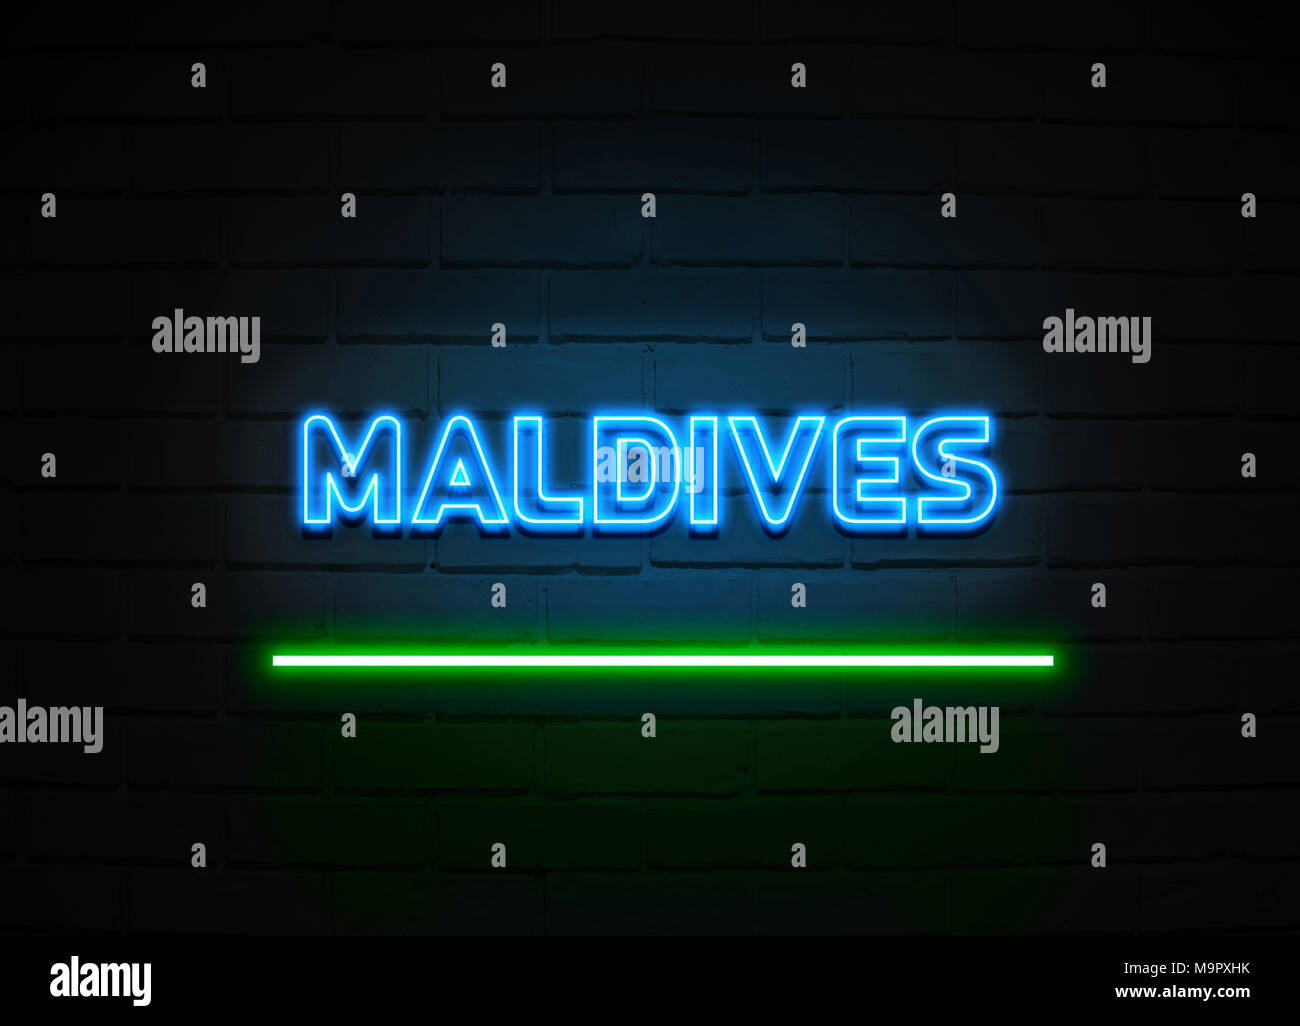 Malediven Leuchtreklame - glühende Leuchtreklame auf brickwall Wand - 3D-Royalty Free Stock Illustration dargestellt. Stockfoto